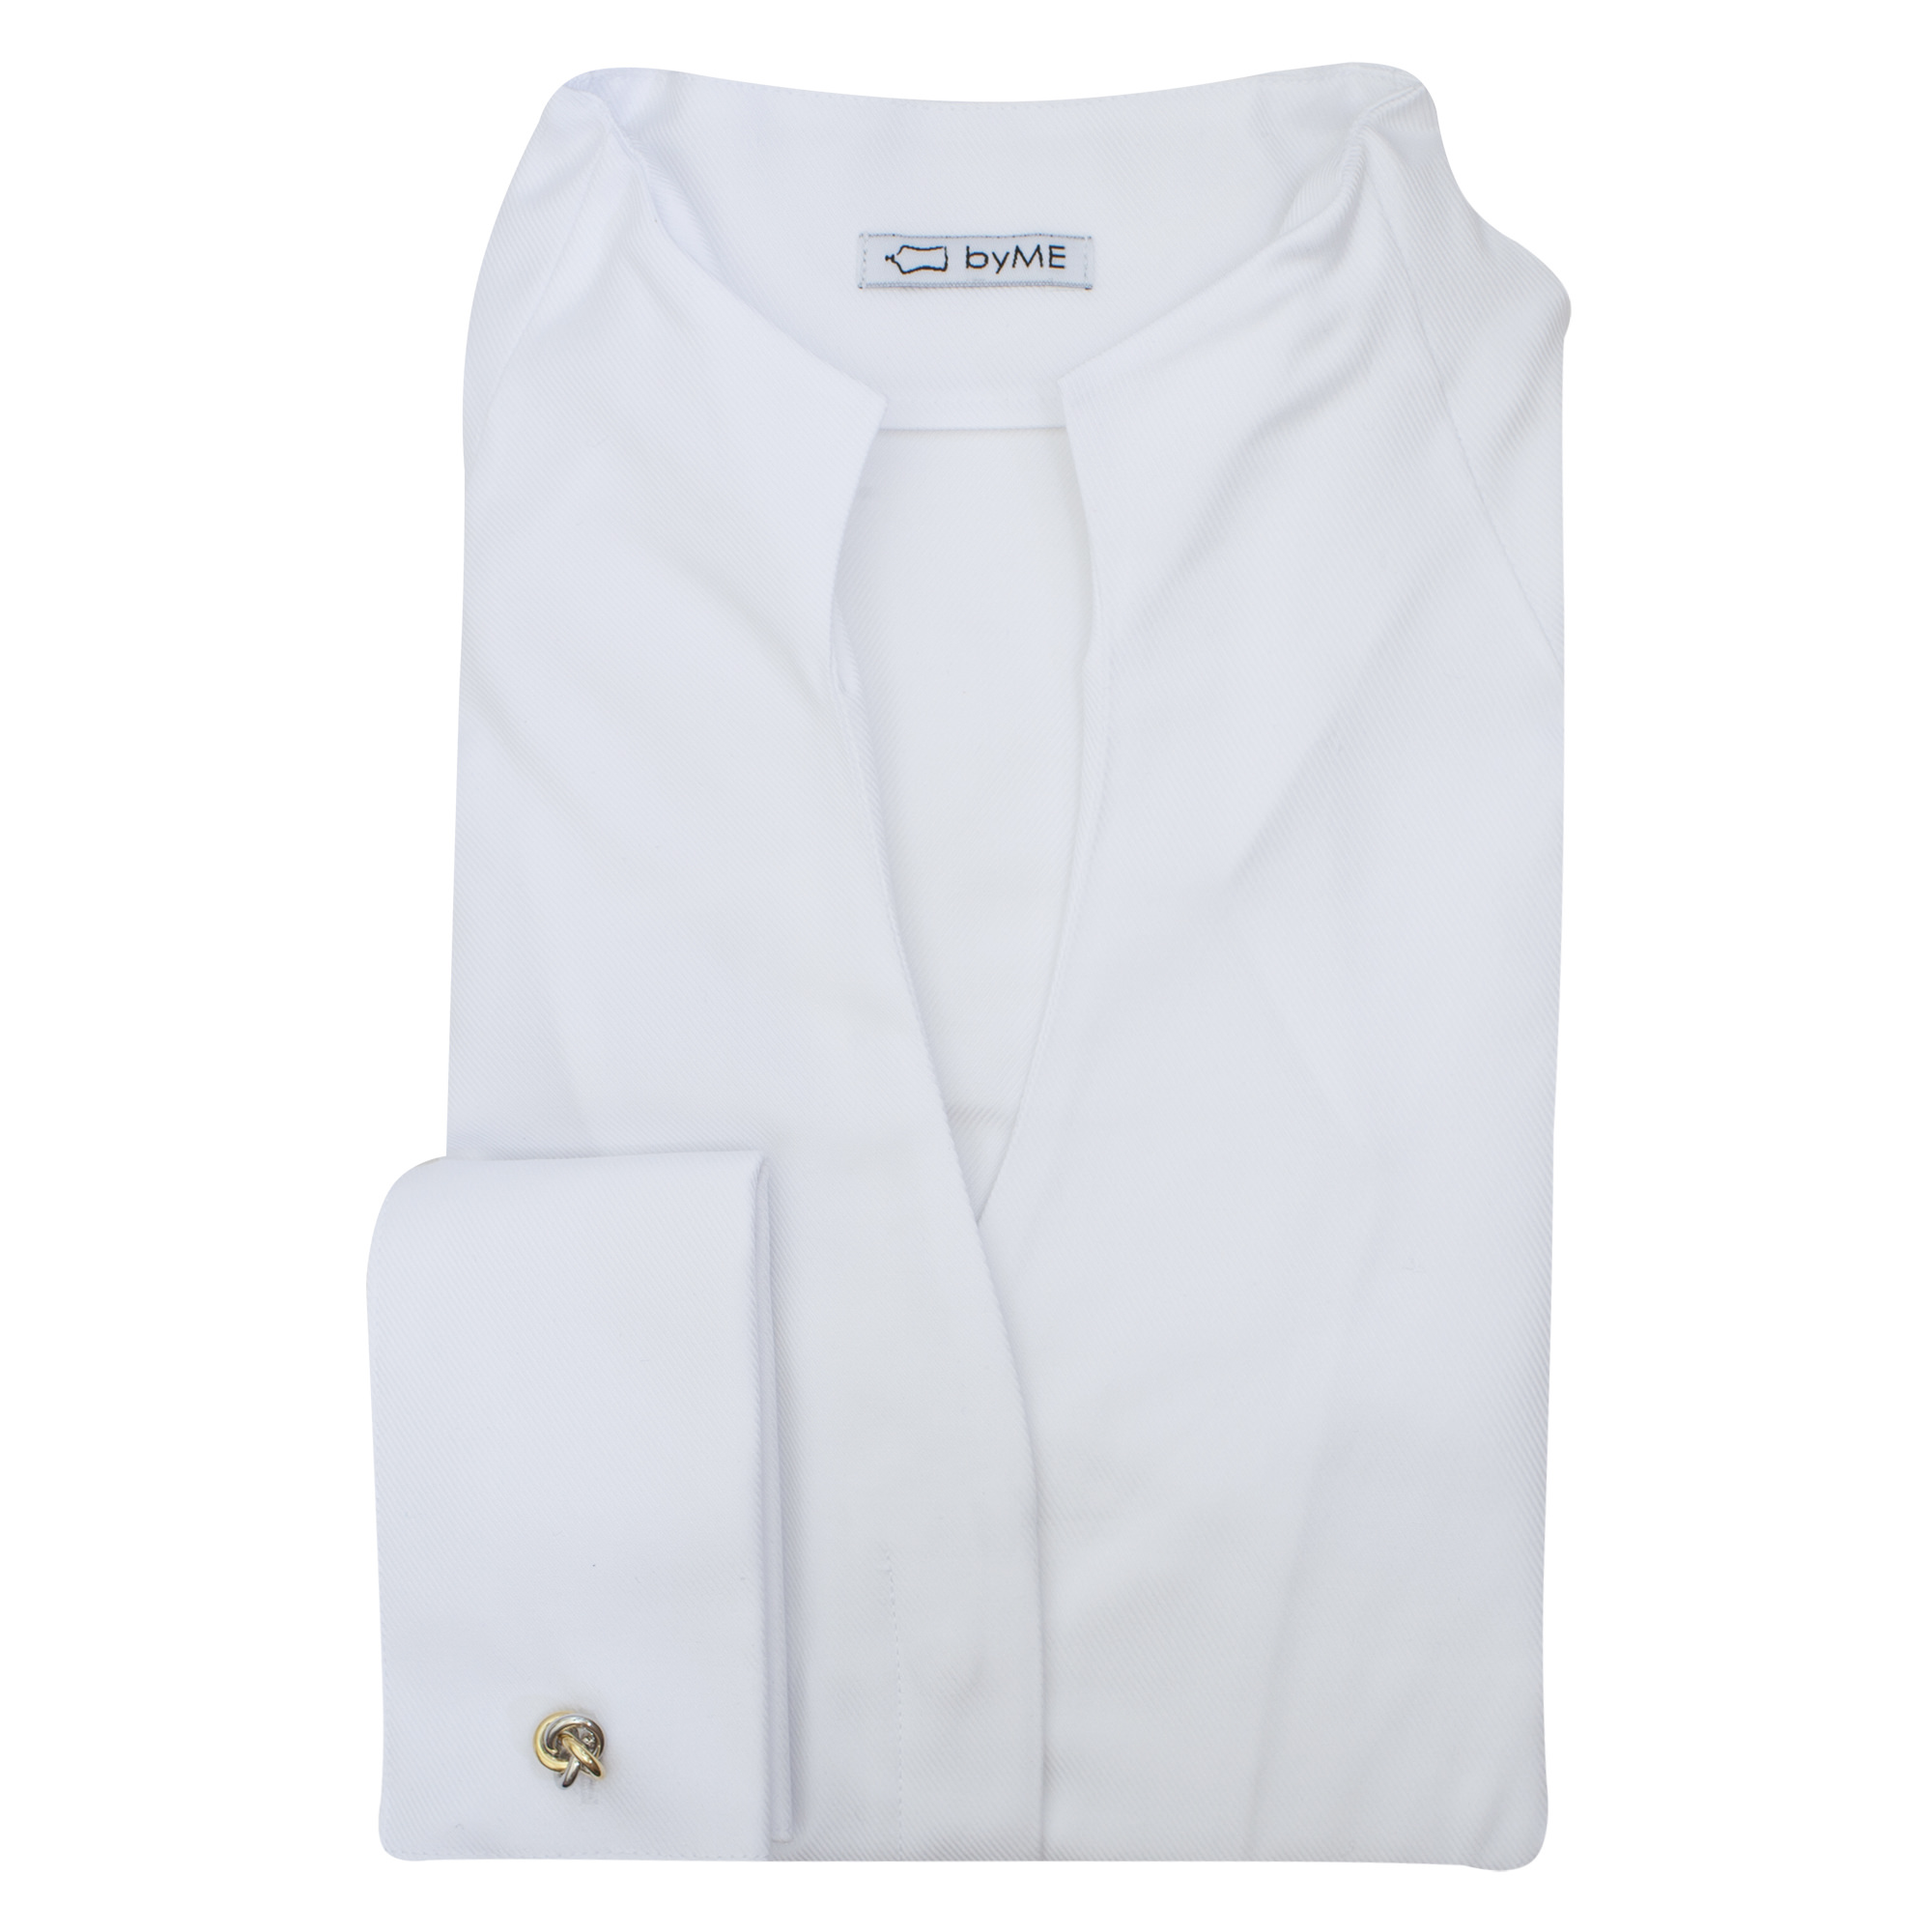 Женская рубашка под запонки воротник стойка белая - 8160 от byME 